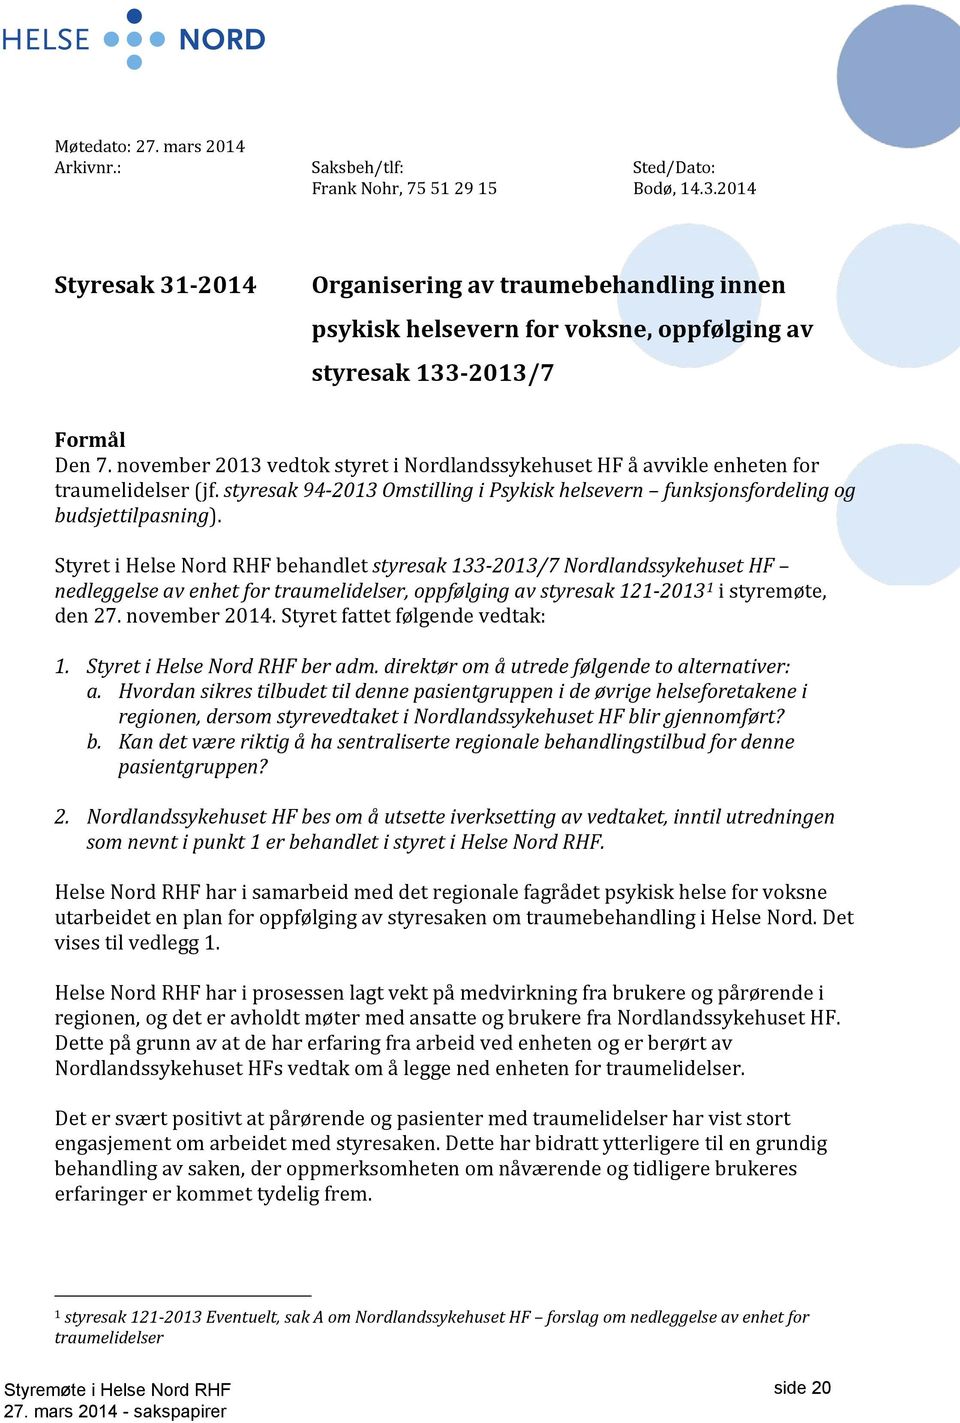 november 2013 vedtok styret i Nordlandssykehuset HF å avvikle enheten for traumelidelser (jf. styresak 94-2013 Omstilling i Psykisk helsevern funksjonsfordeling og budsjettilpasning).